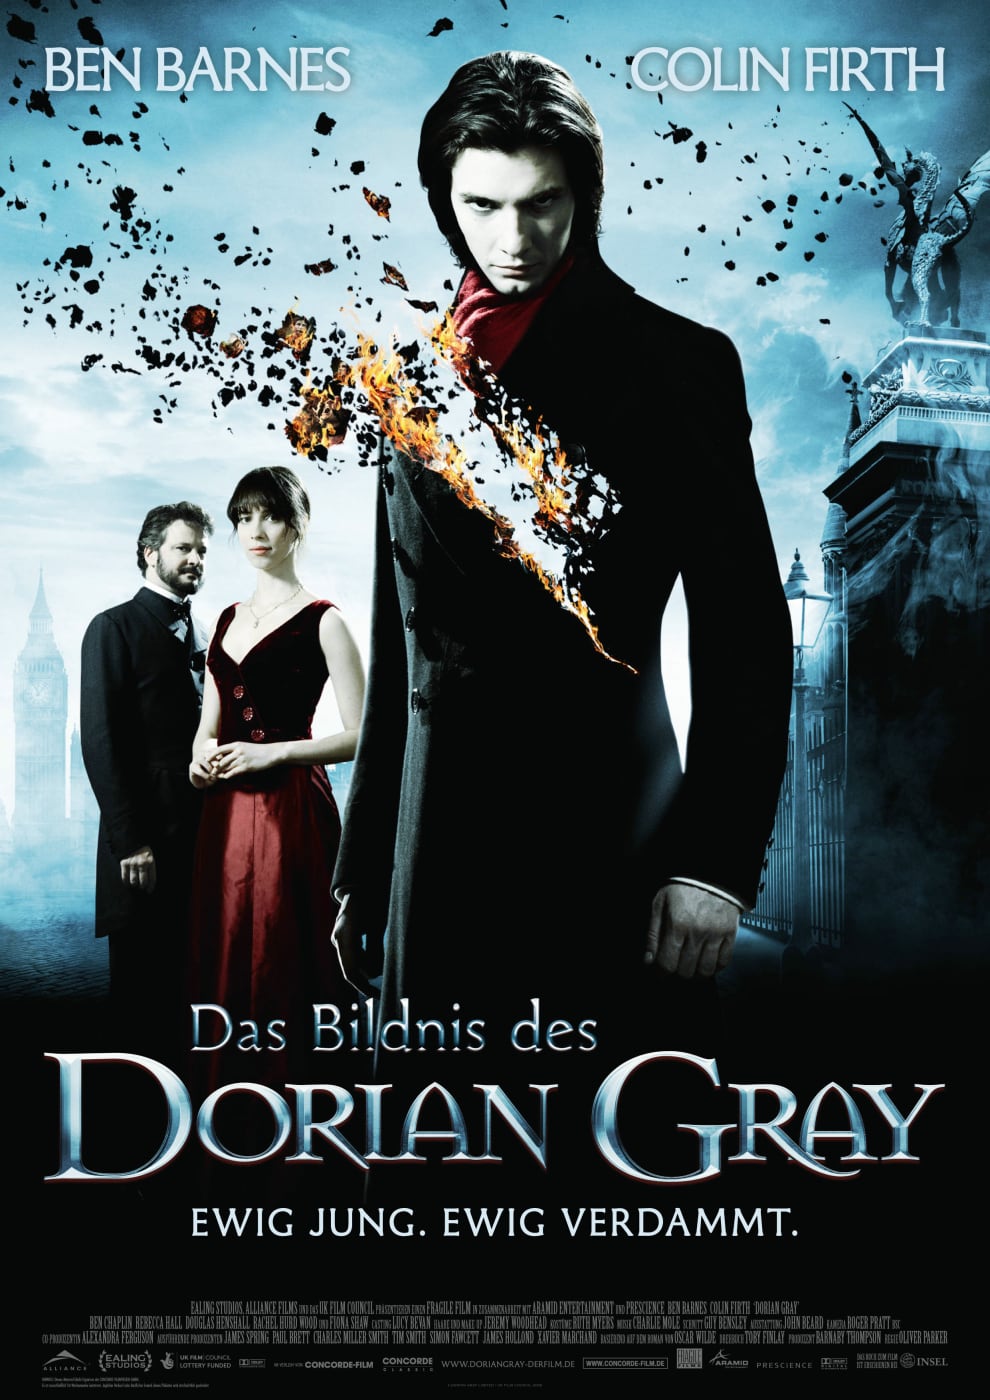 Plakat von "Das Bildnis des Dorian Gray"